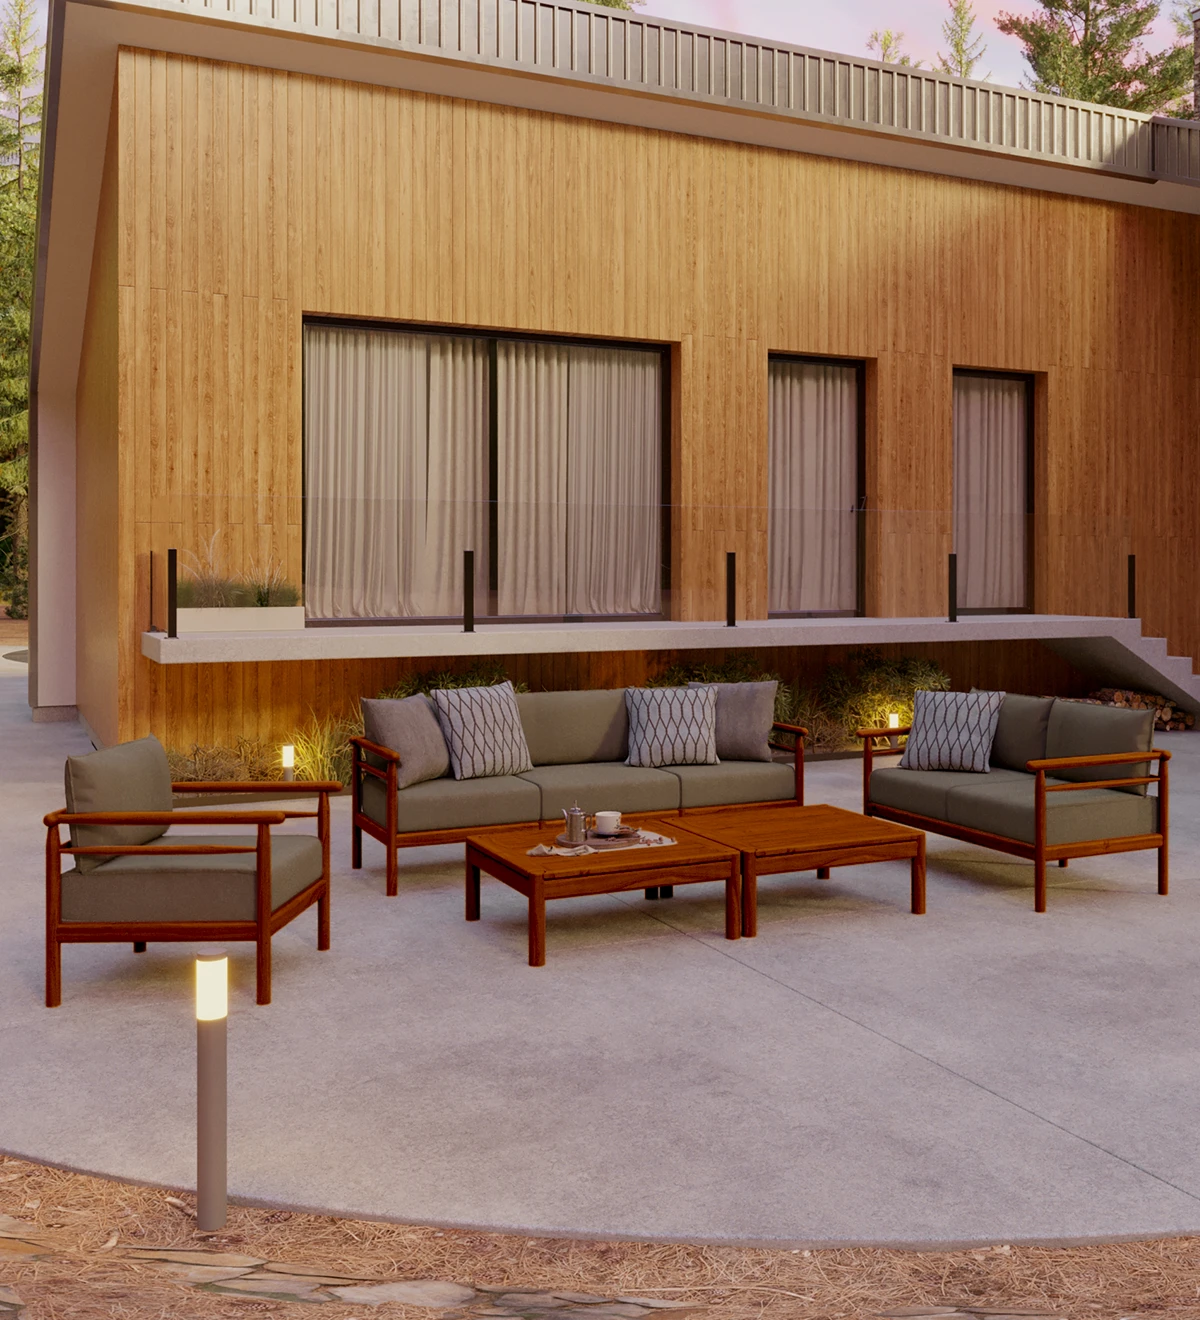 Sofá de 2 plazas con cojines tapizados en tejido y estructura de madera natural color miel.